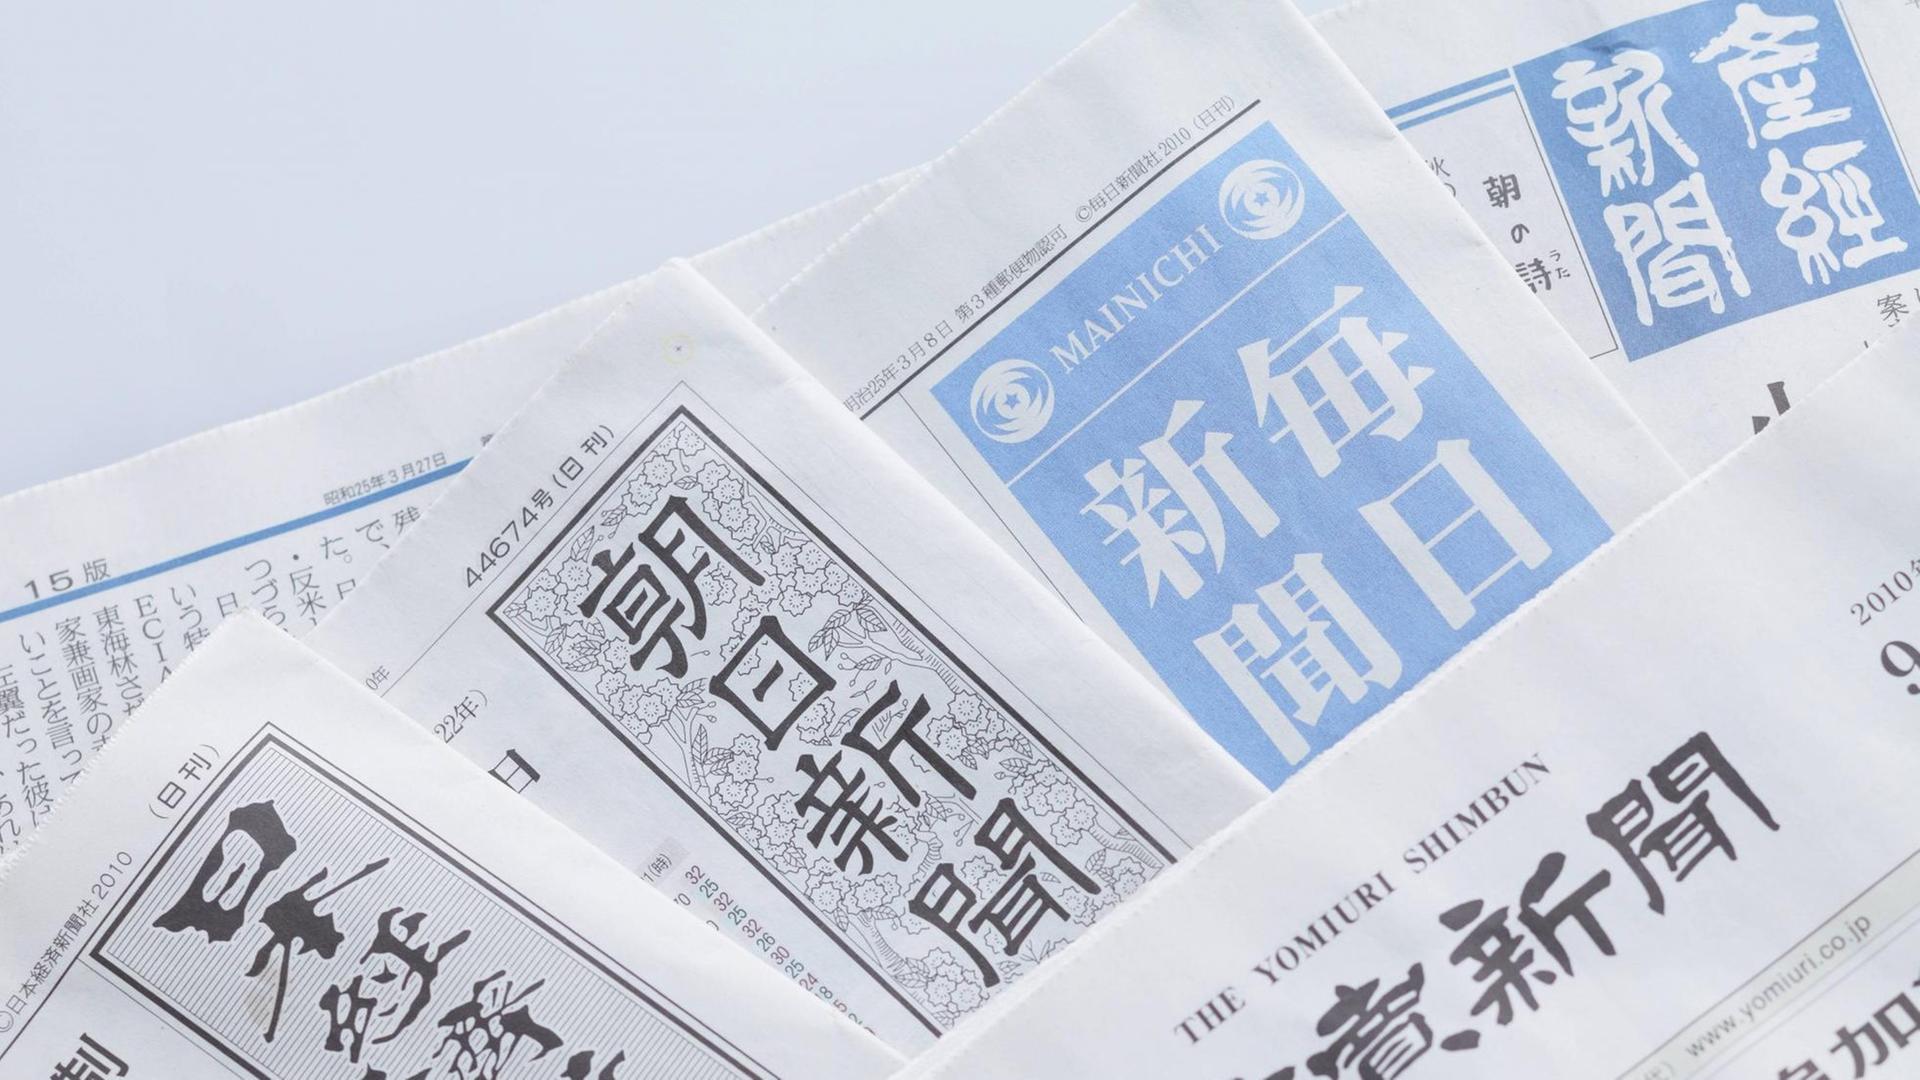 Die Cover der fünf großen japanischen Zeitungen Yomiuri, Asahi, Mainichi, Nihon Keizai und Sankei, alle mit Sitz in Tokio.